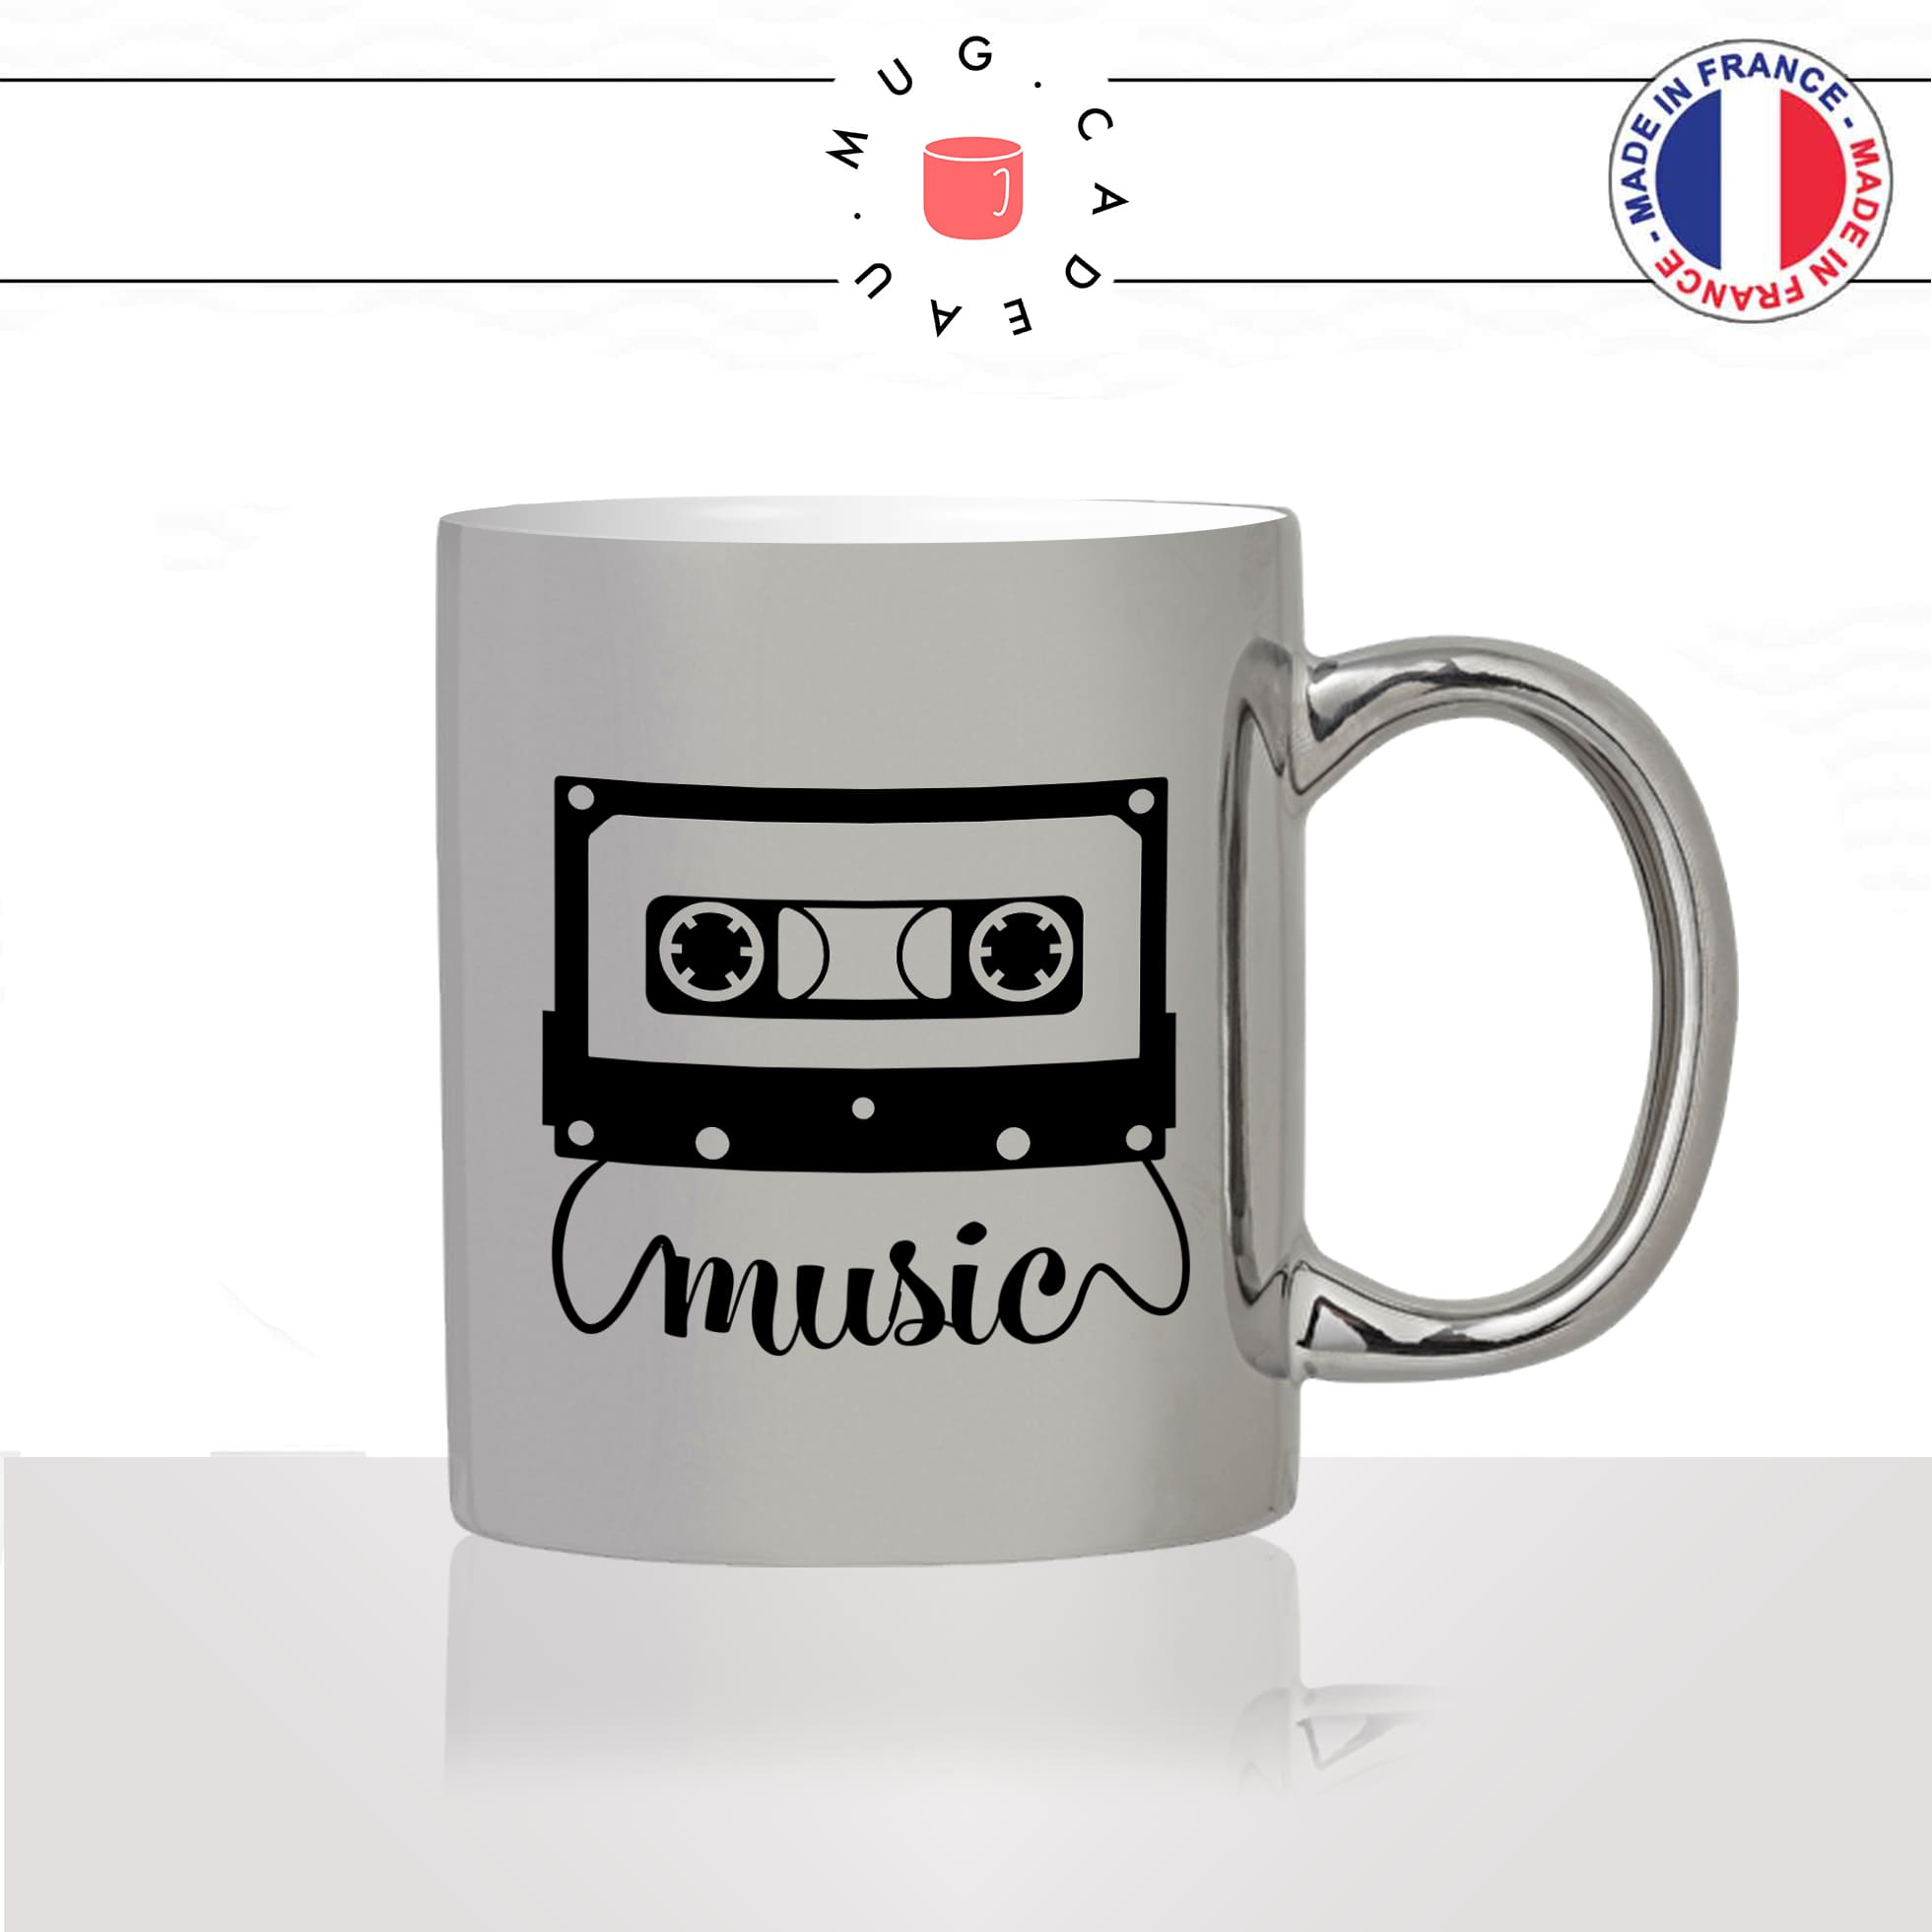 mug-tasse-argent-argenté-silver-cassette-de-musique-vintage-année-80-chanson-danse-chant-passion-idée-cadeau-fun-cool-café-thé2